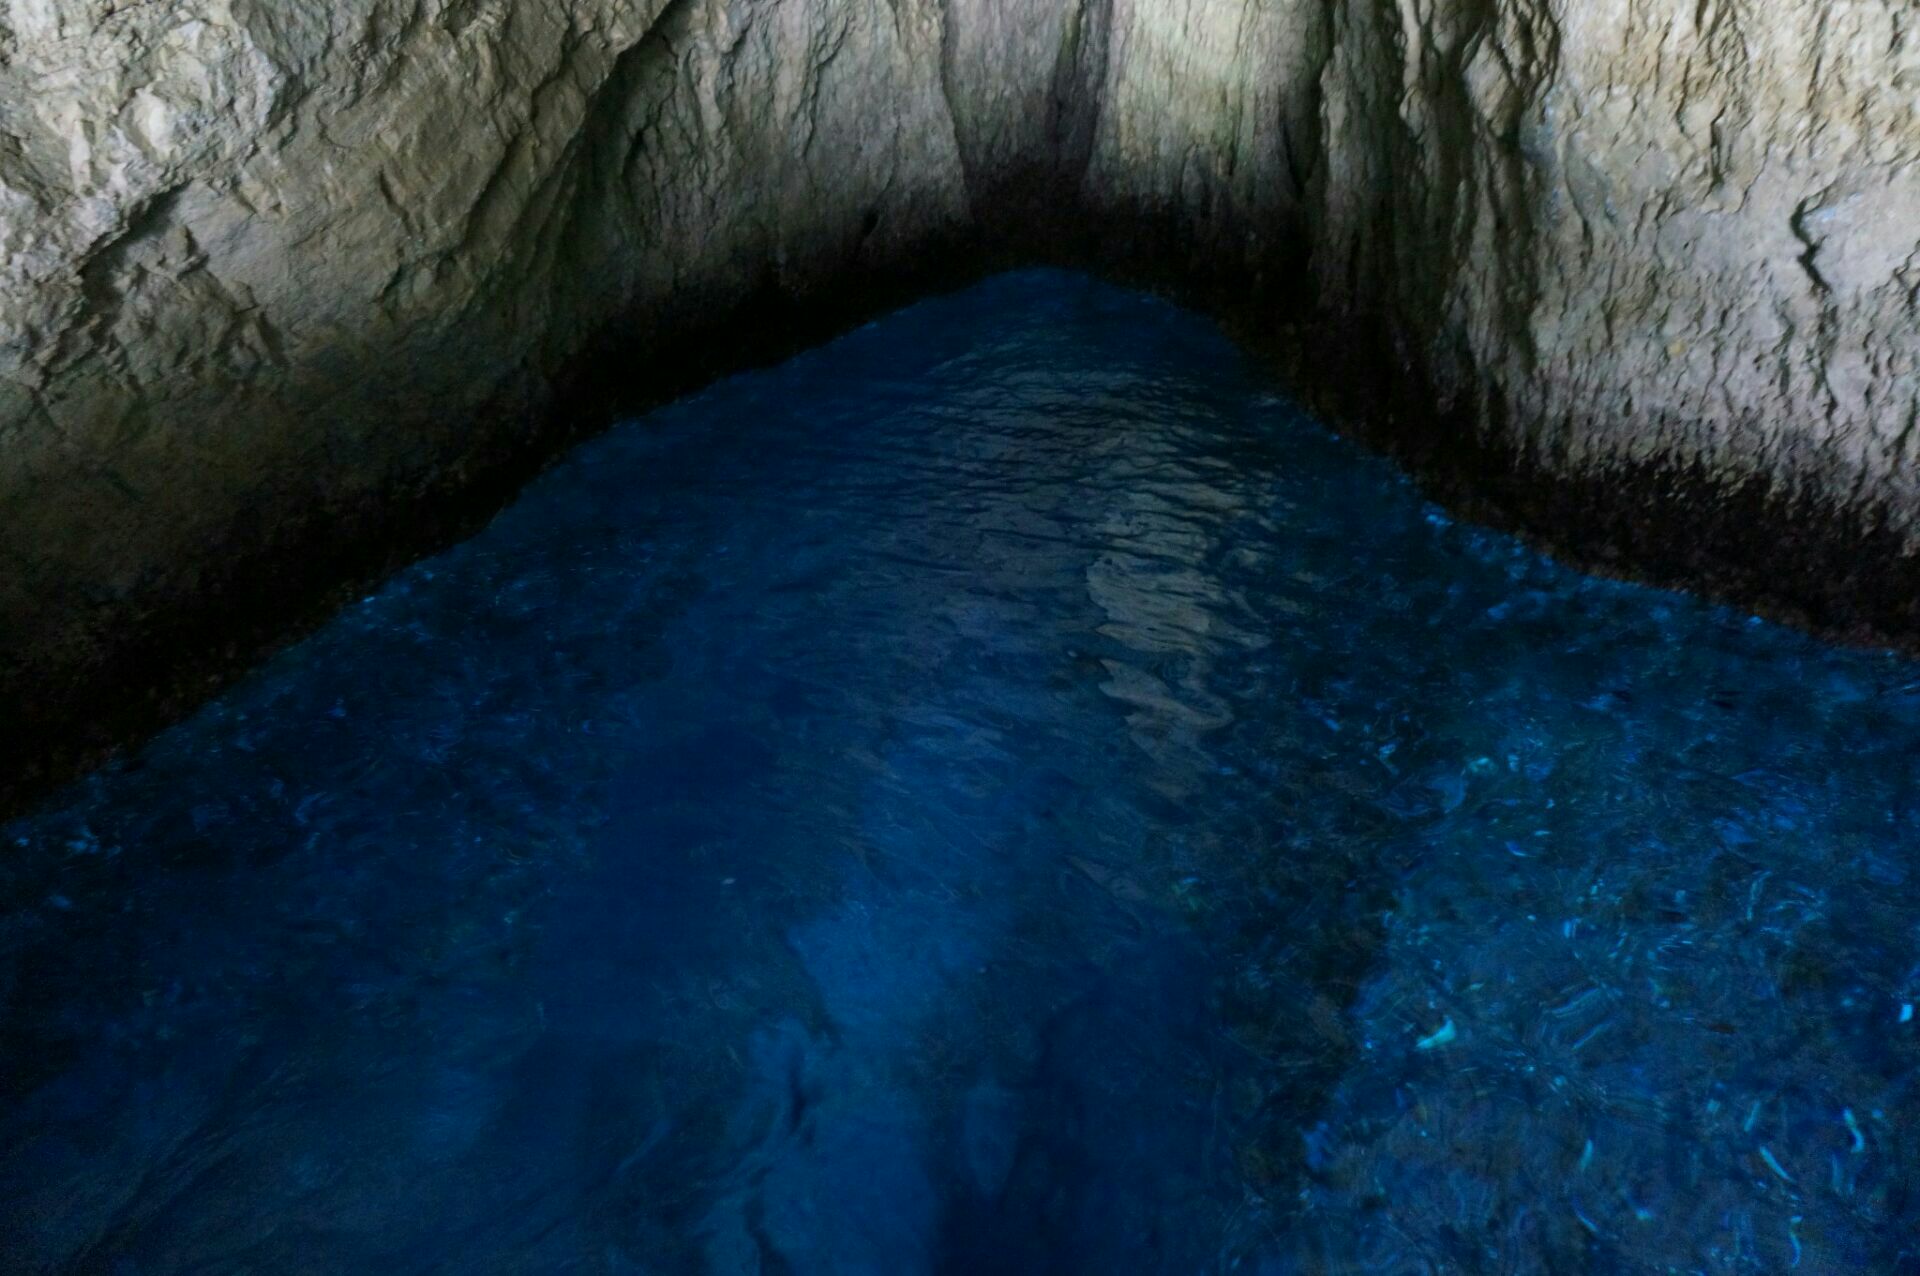 【携程攻略】塞班岛蓝洞景点,蓝洞最神奇之处，就是石灰岩经过海水长期侵蚀、崩塌，形成一个深洞